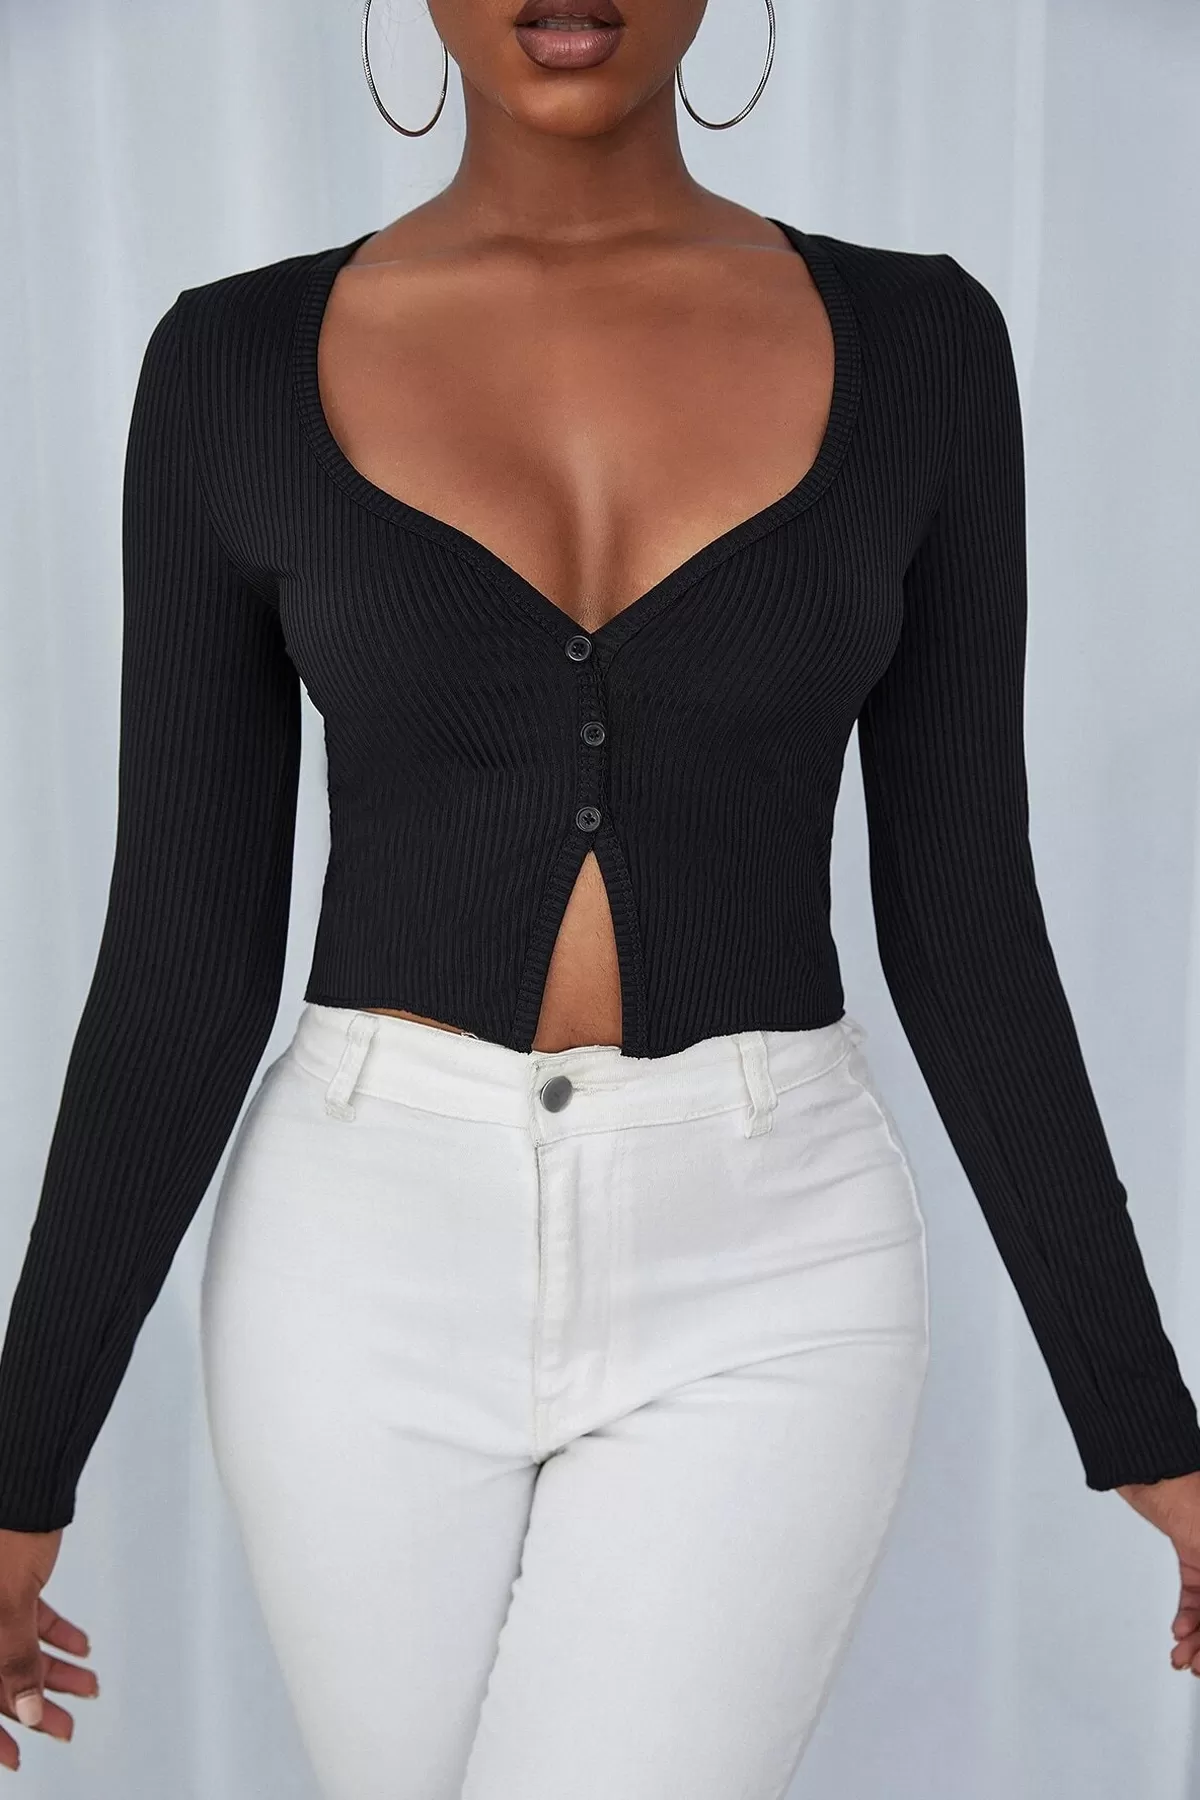 Kadın Siyah Uzun Kollu Düğmeli Göğüs ve Göbek Dekolteli Crop Top Bluz